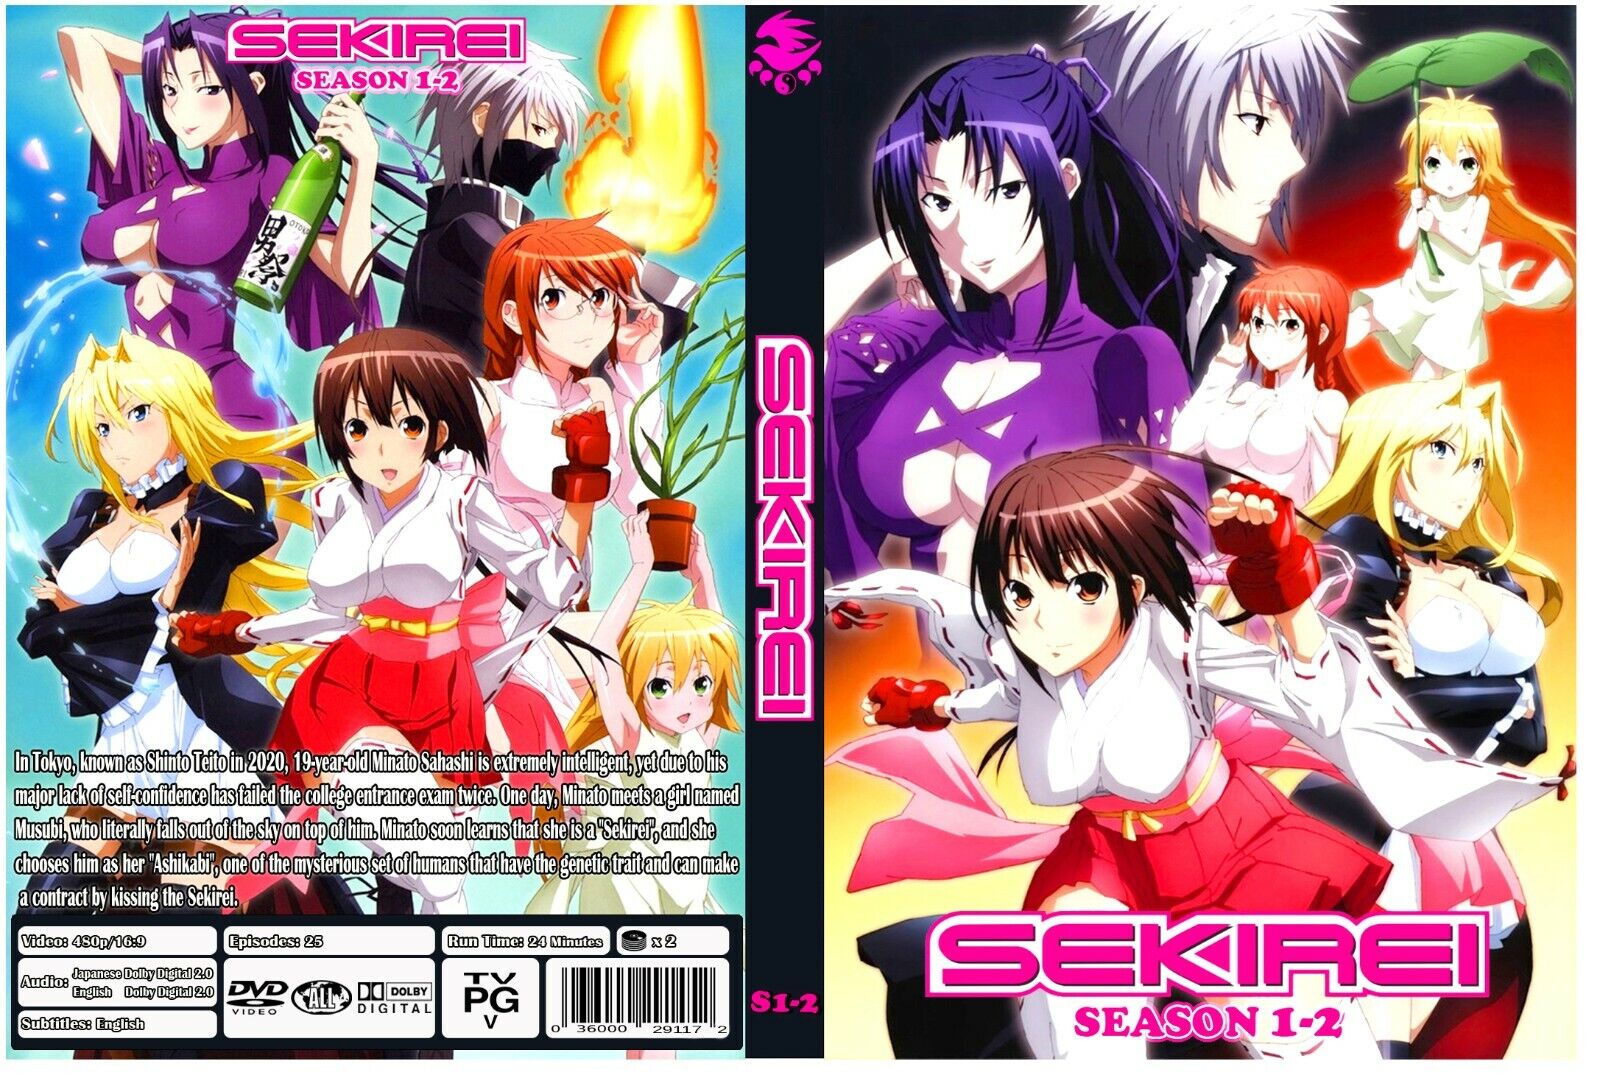 Sekirei season 1-2 Dual Audio English & Japanese , English Subti